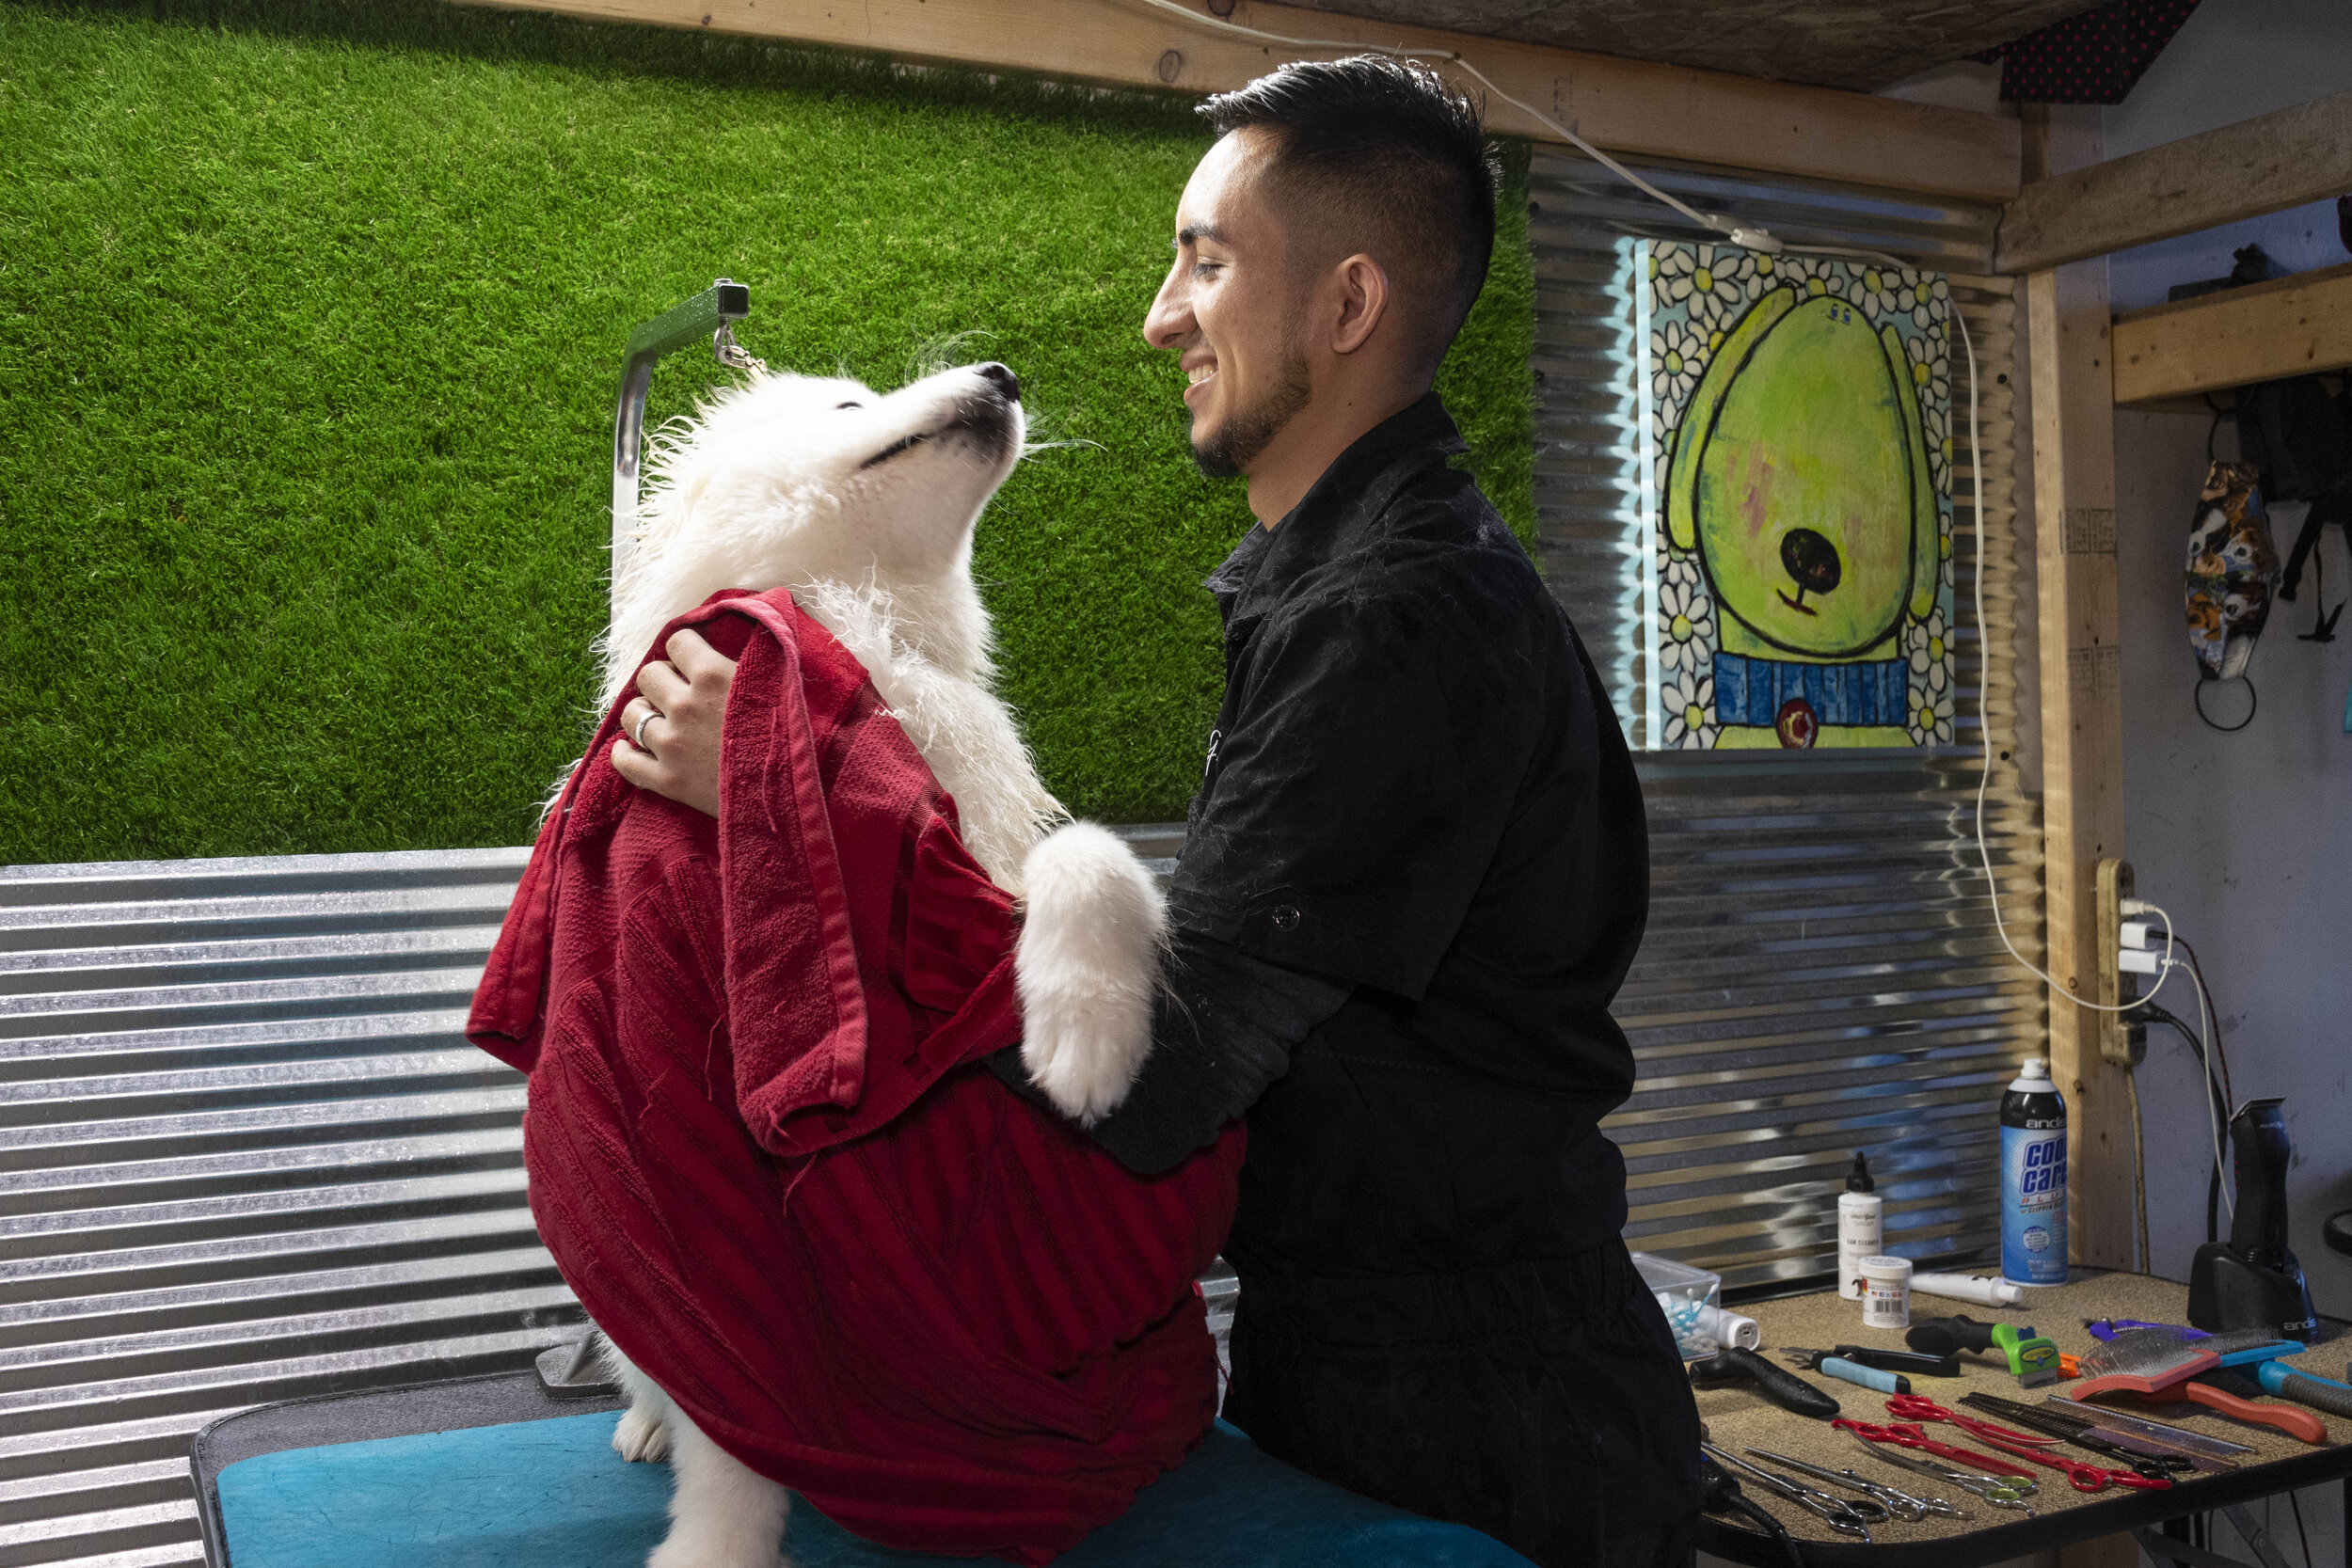  Danny The Groomer baña a su cliente, Coco, el 6 de octubre de 2020. Hernández abrió su negocio de peluquería canina a principios de este año (Foto por April Alonso).     